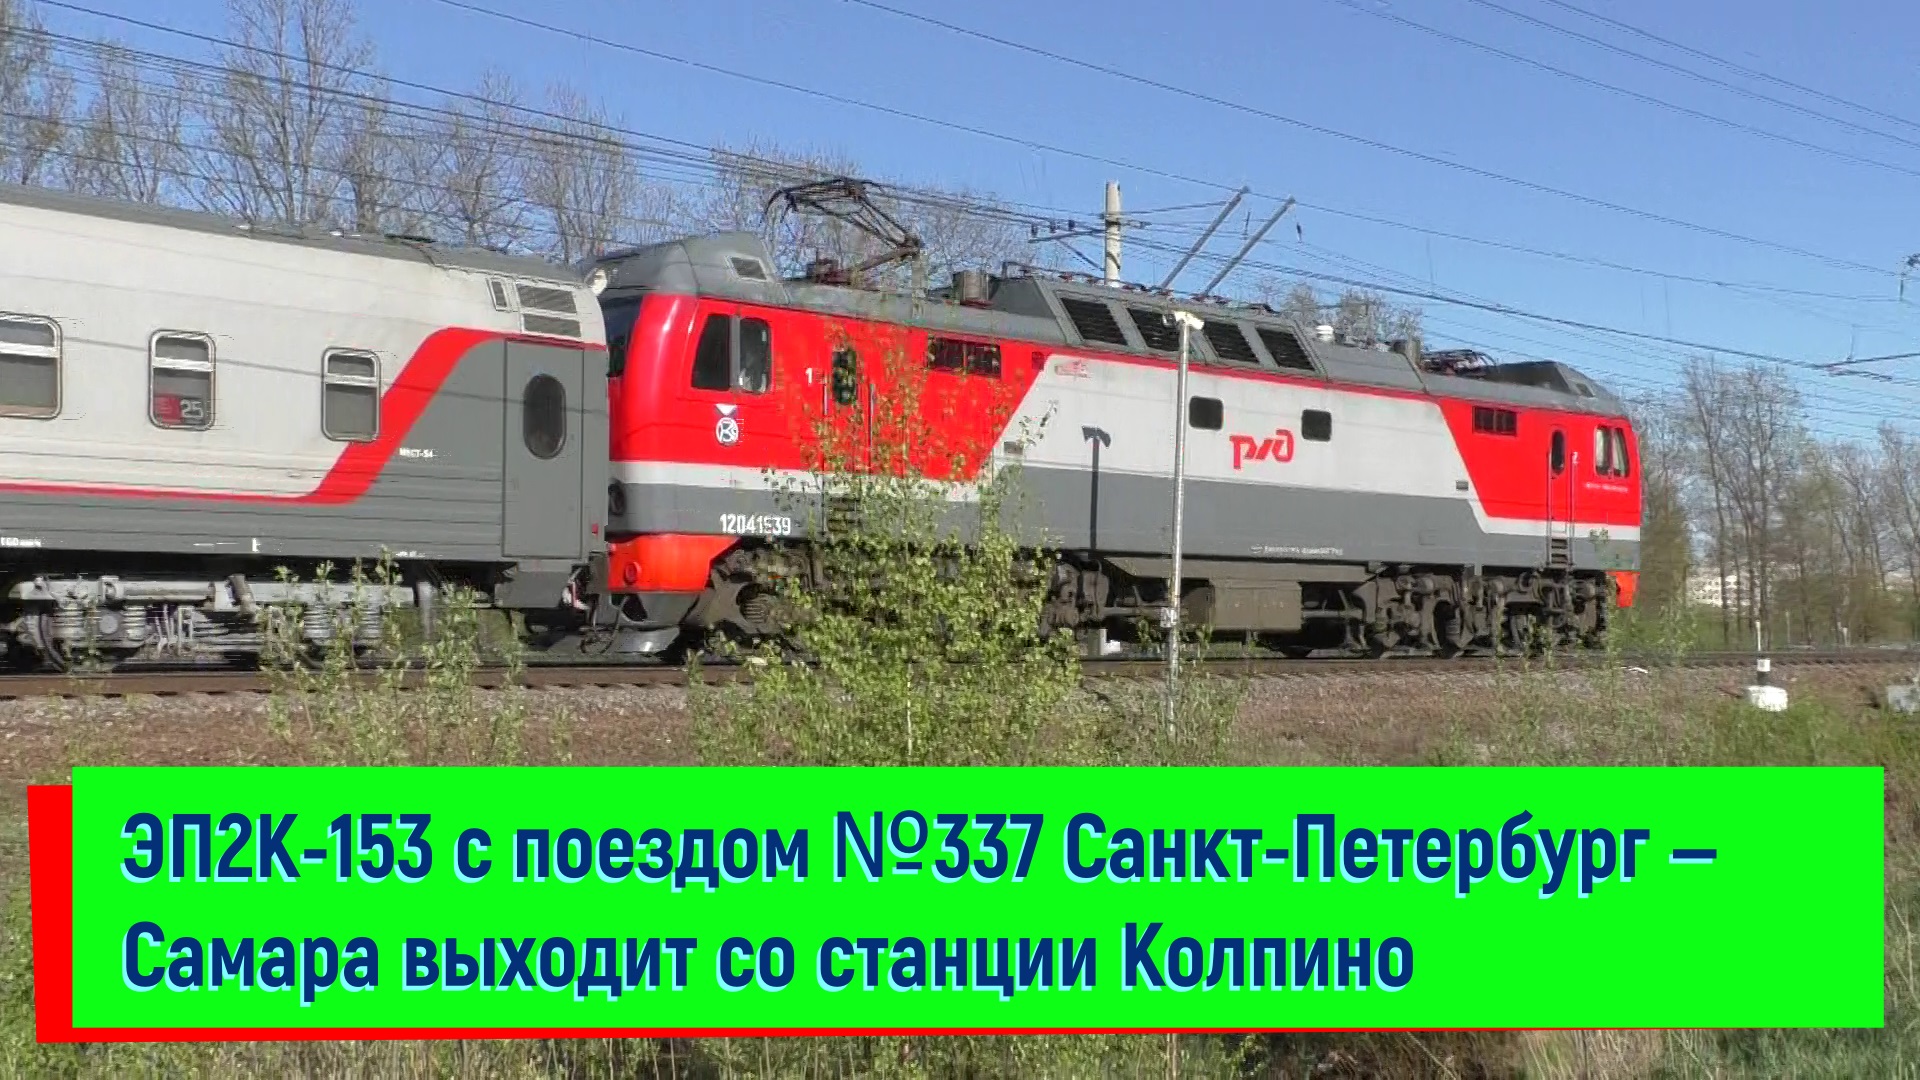 ЭП2К-153 с поездом №337 Санкт-Петербург — Самара выходит со станции Колпино | EP2K-153